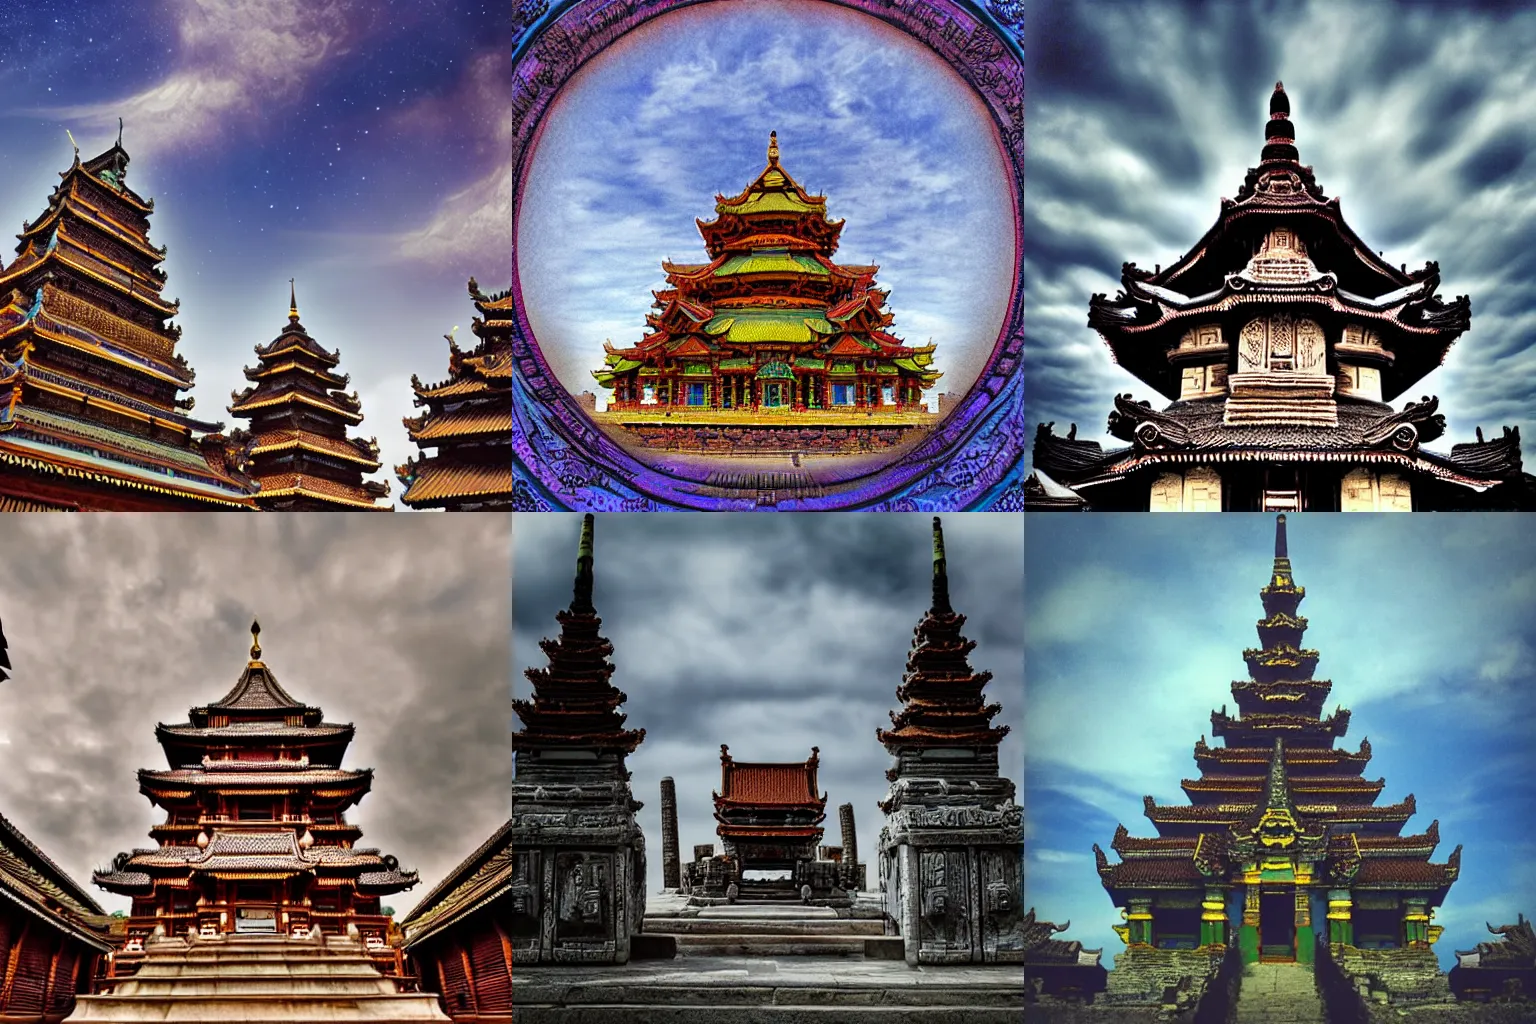 Prompt: intricate sky temple